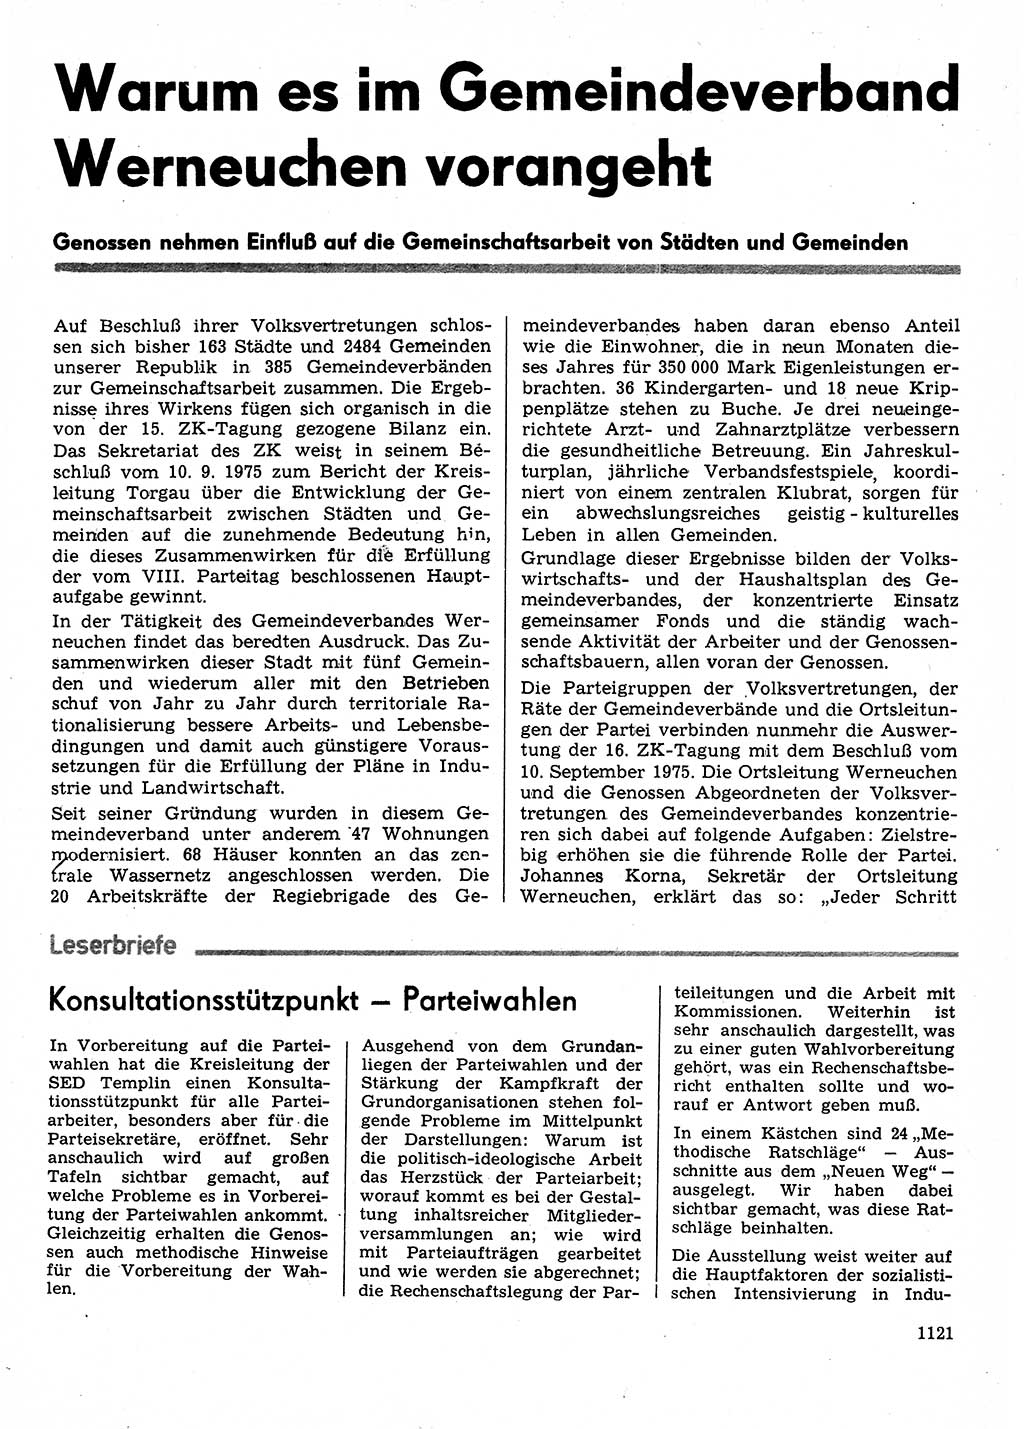 Neuer Weg (NW), Organ des Zentralkomitees (ZK) der SED (Sozialistische Einheitspartei Deutschlands) fÃ¼r Fragen des Parteilebens, 30. Jahrgang [Deutsche Demokratische Republik (DDR)] 1975, Seite 1121 (NW ZK SED DDR 1975, S. 1121)